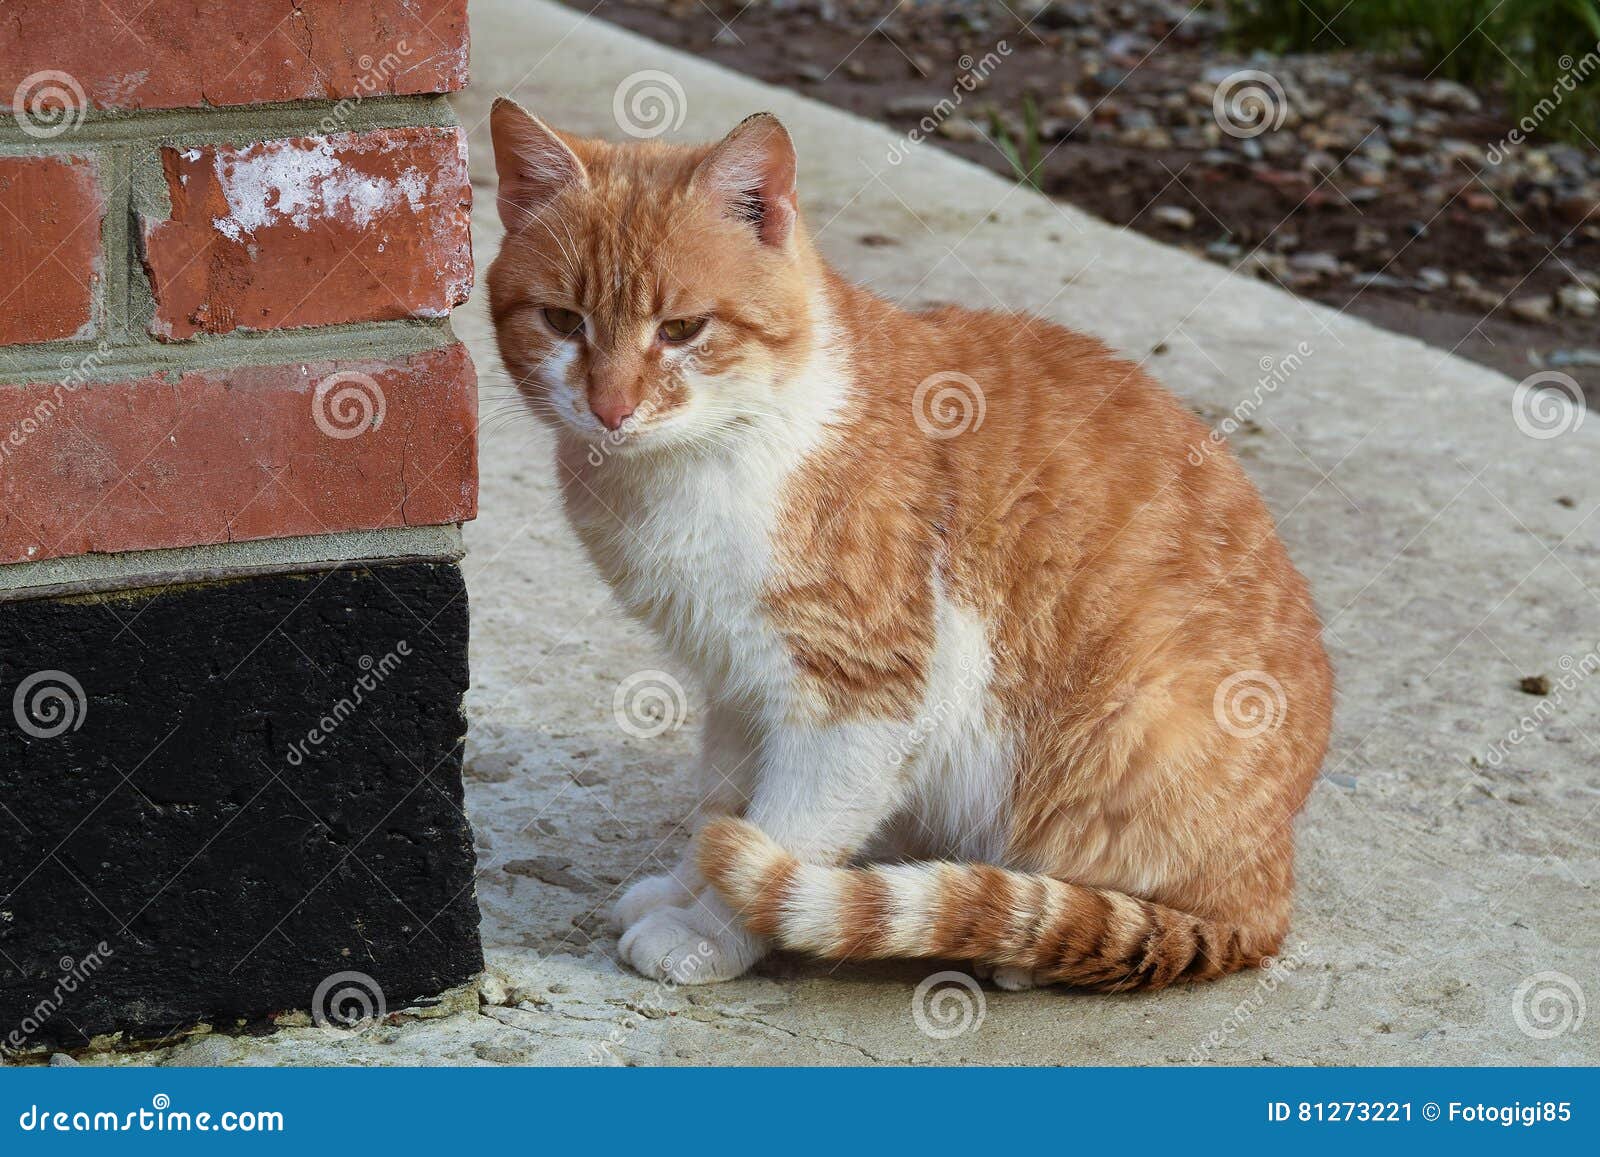 Volwassen Rode Kat Het Zitten Op Concrete Rode Kat Stock Afbeelding - Image huis: 81273221